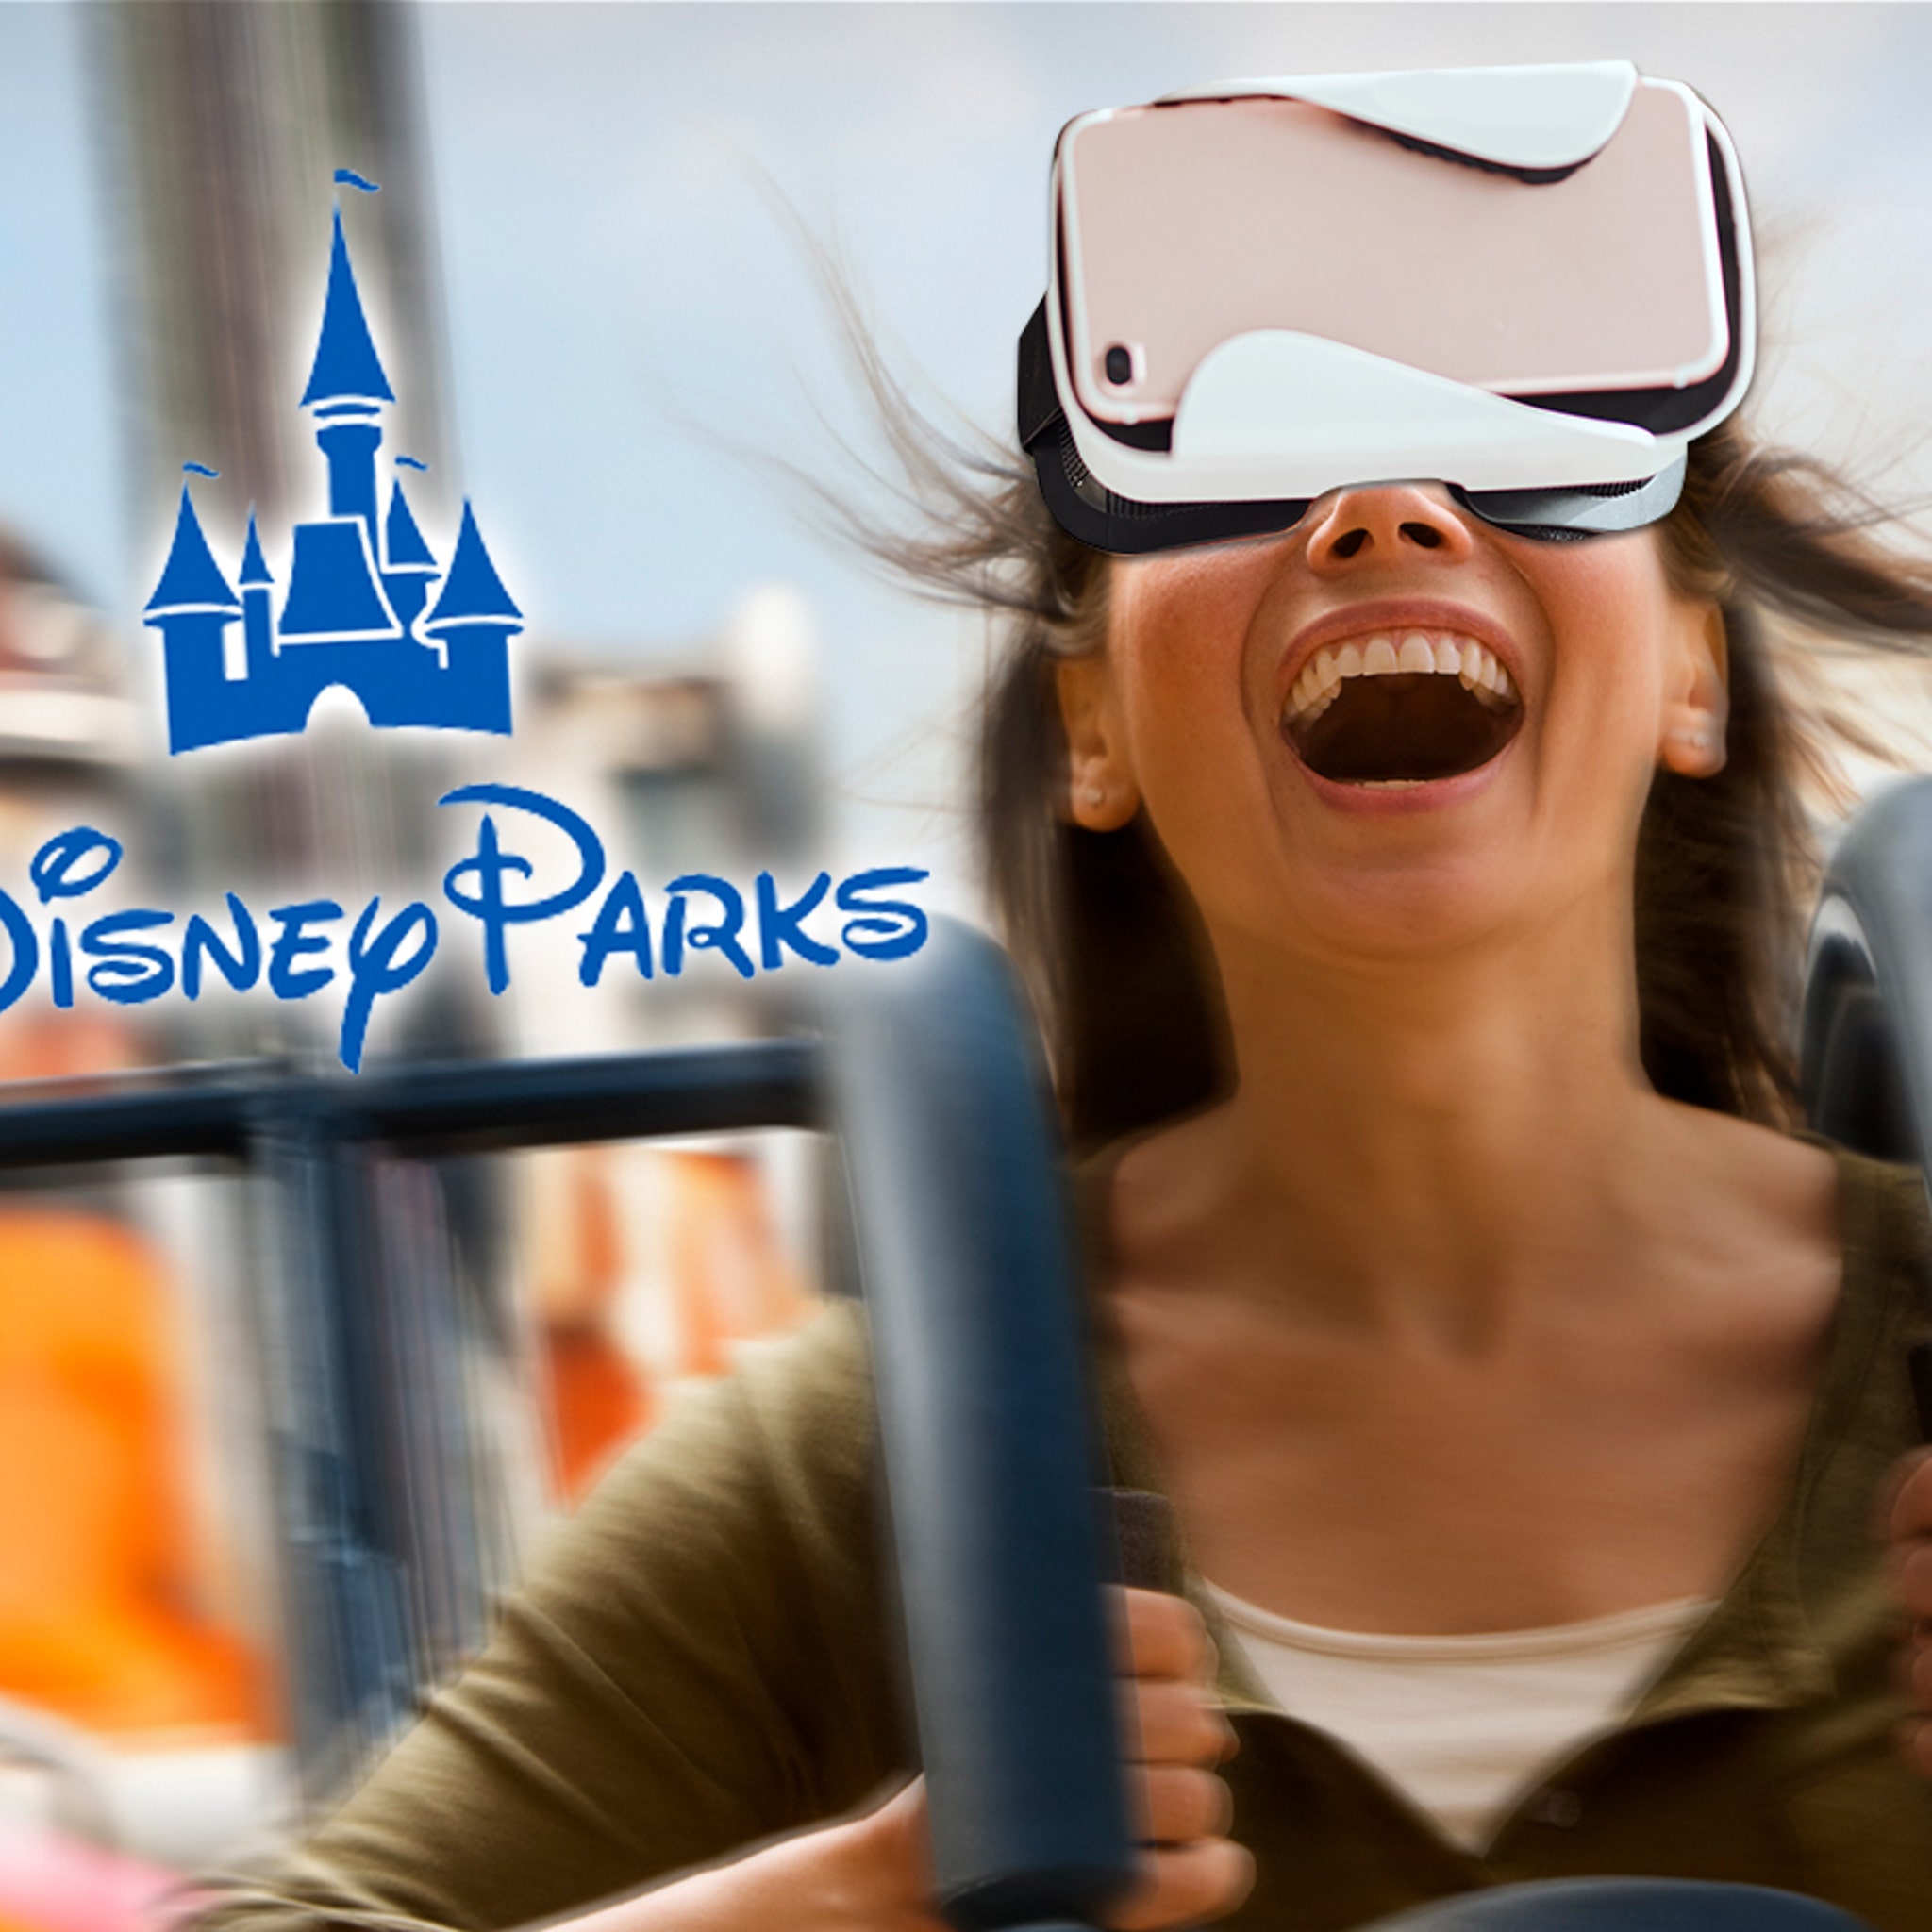 Disney Theme Park Rides via Virtual Reality Channel